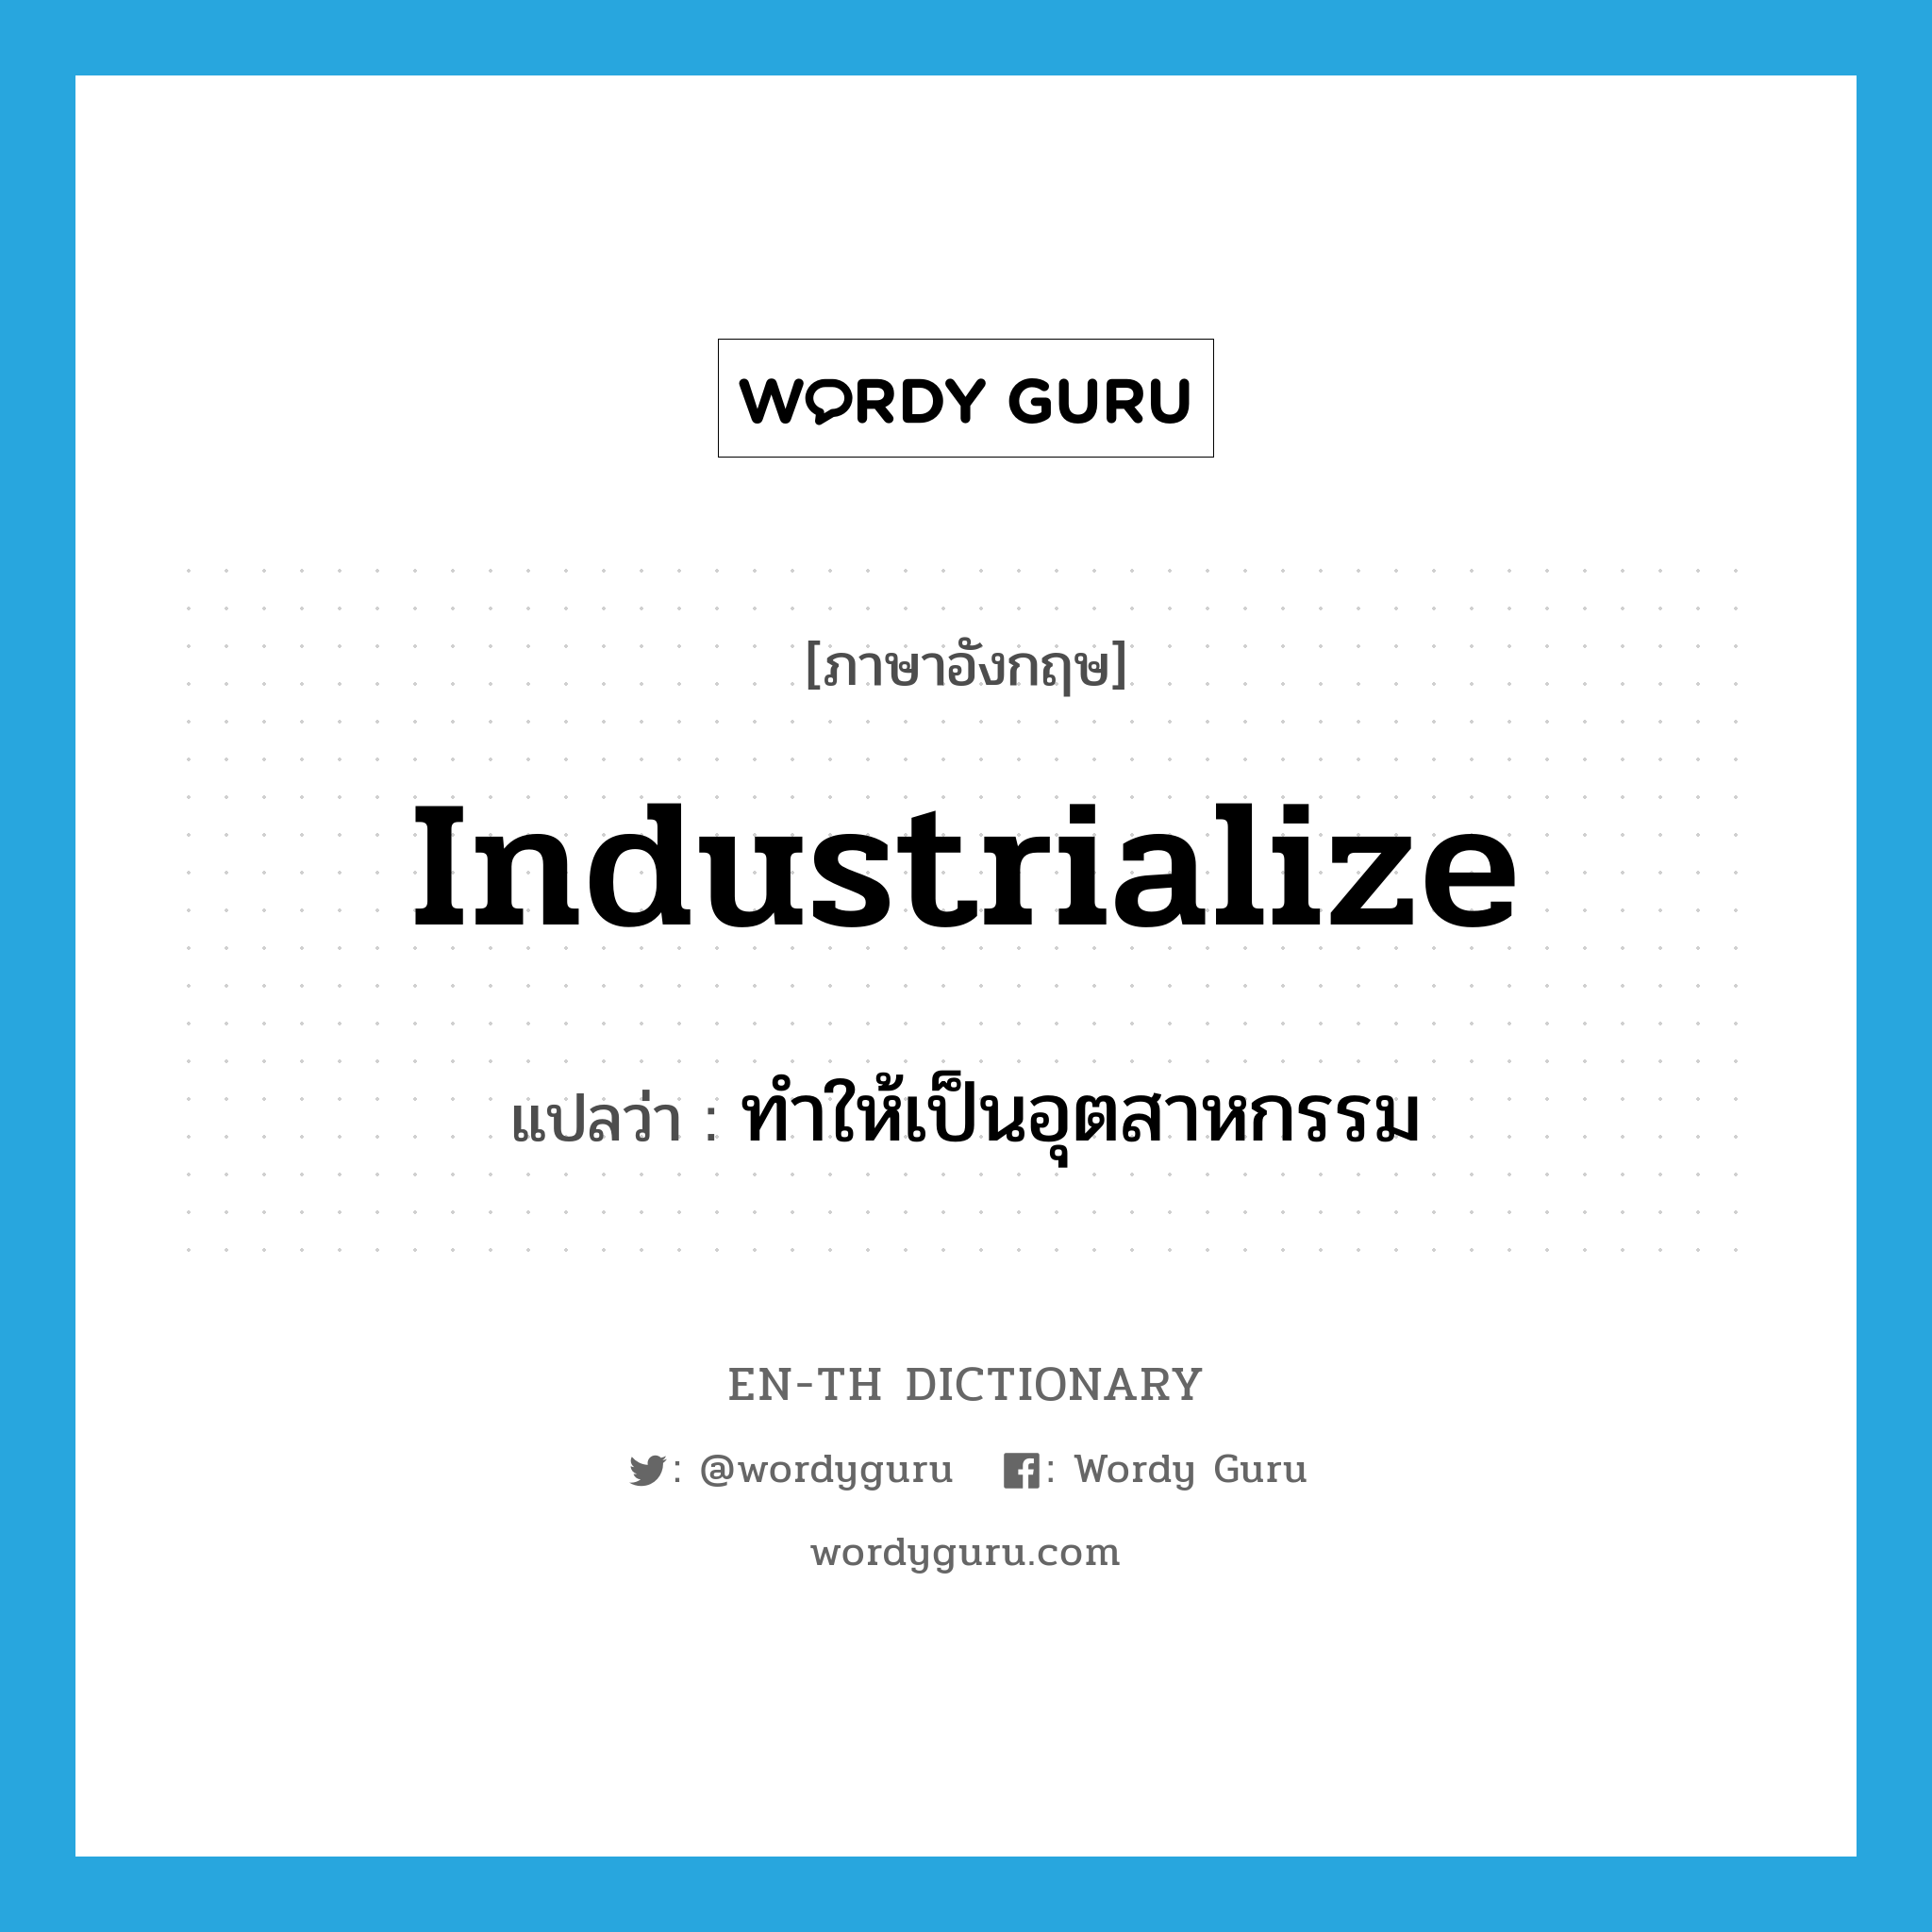 ทำให้เป็นอุตสาหกรรม ภาษาอังกฤษ?, คำศัพท์ภาษาอังกฤษ ทำให้เป็นอุตสาหกรรม แปลว่า industrialize ประเภท VT หมวด VT